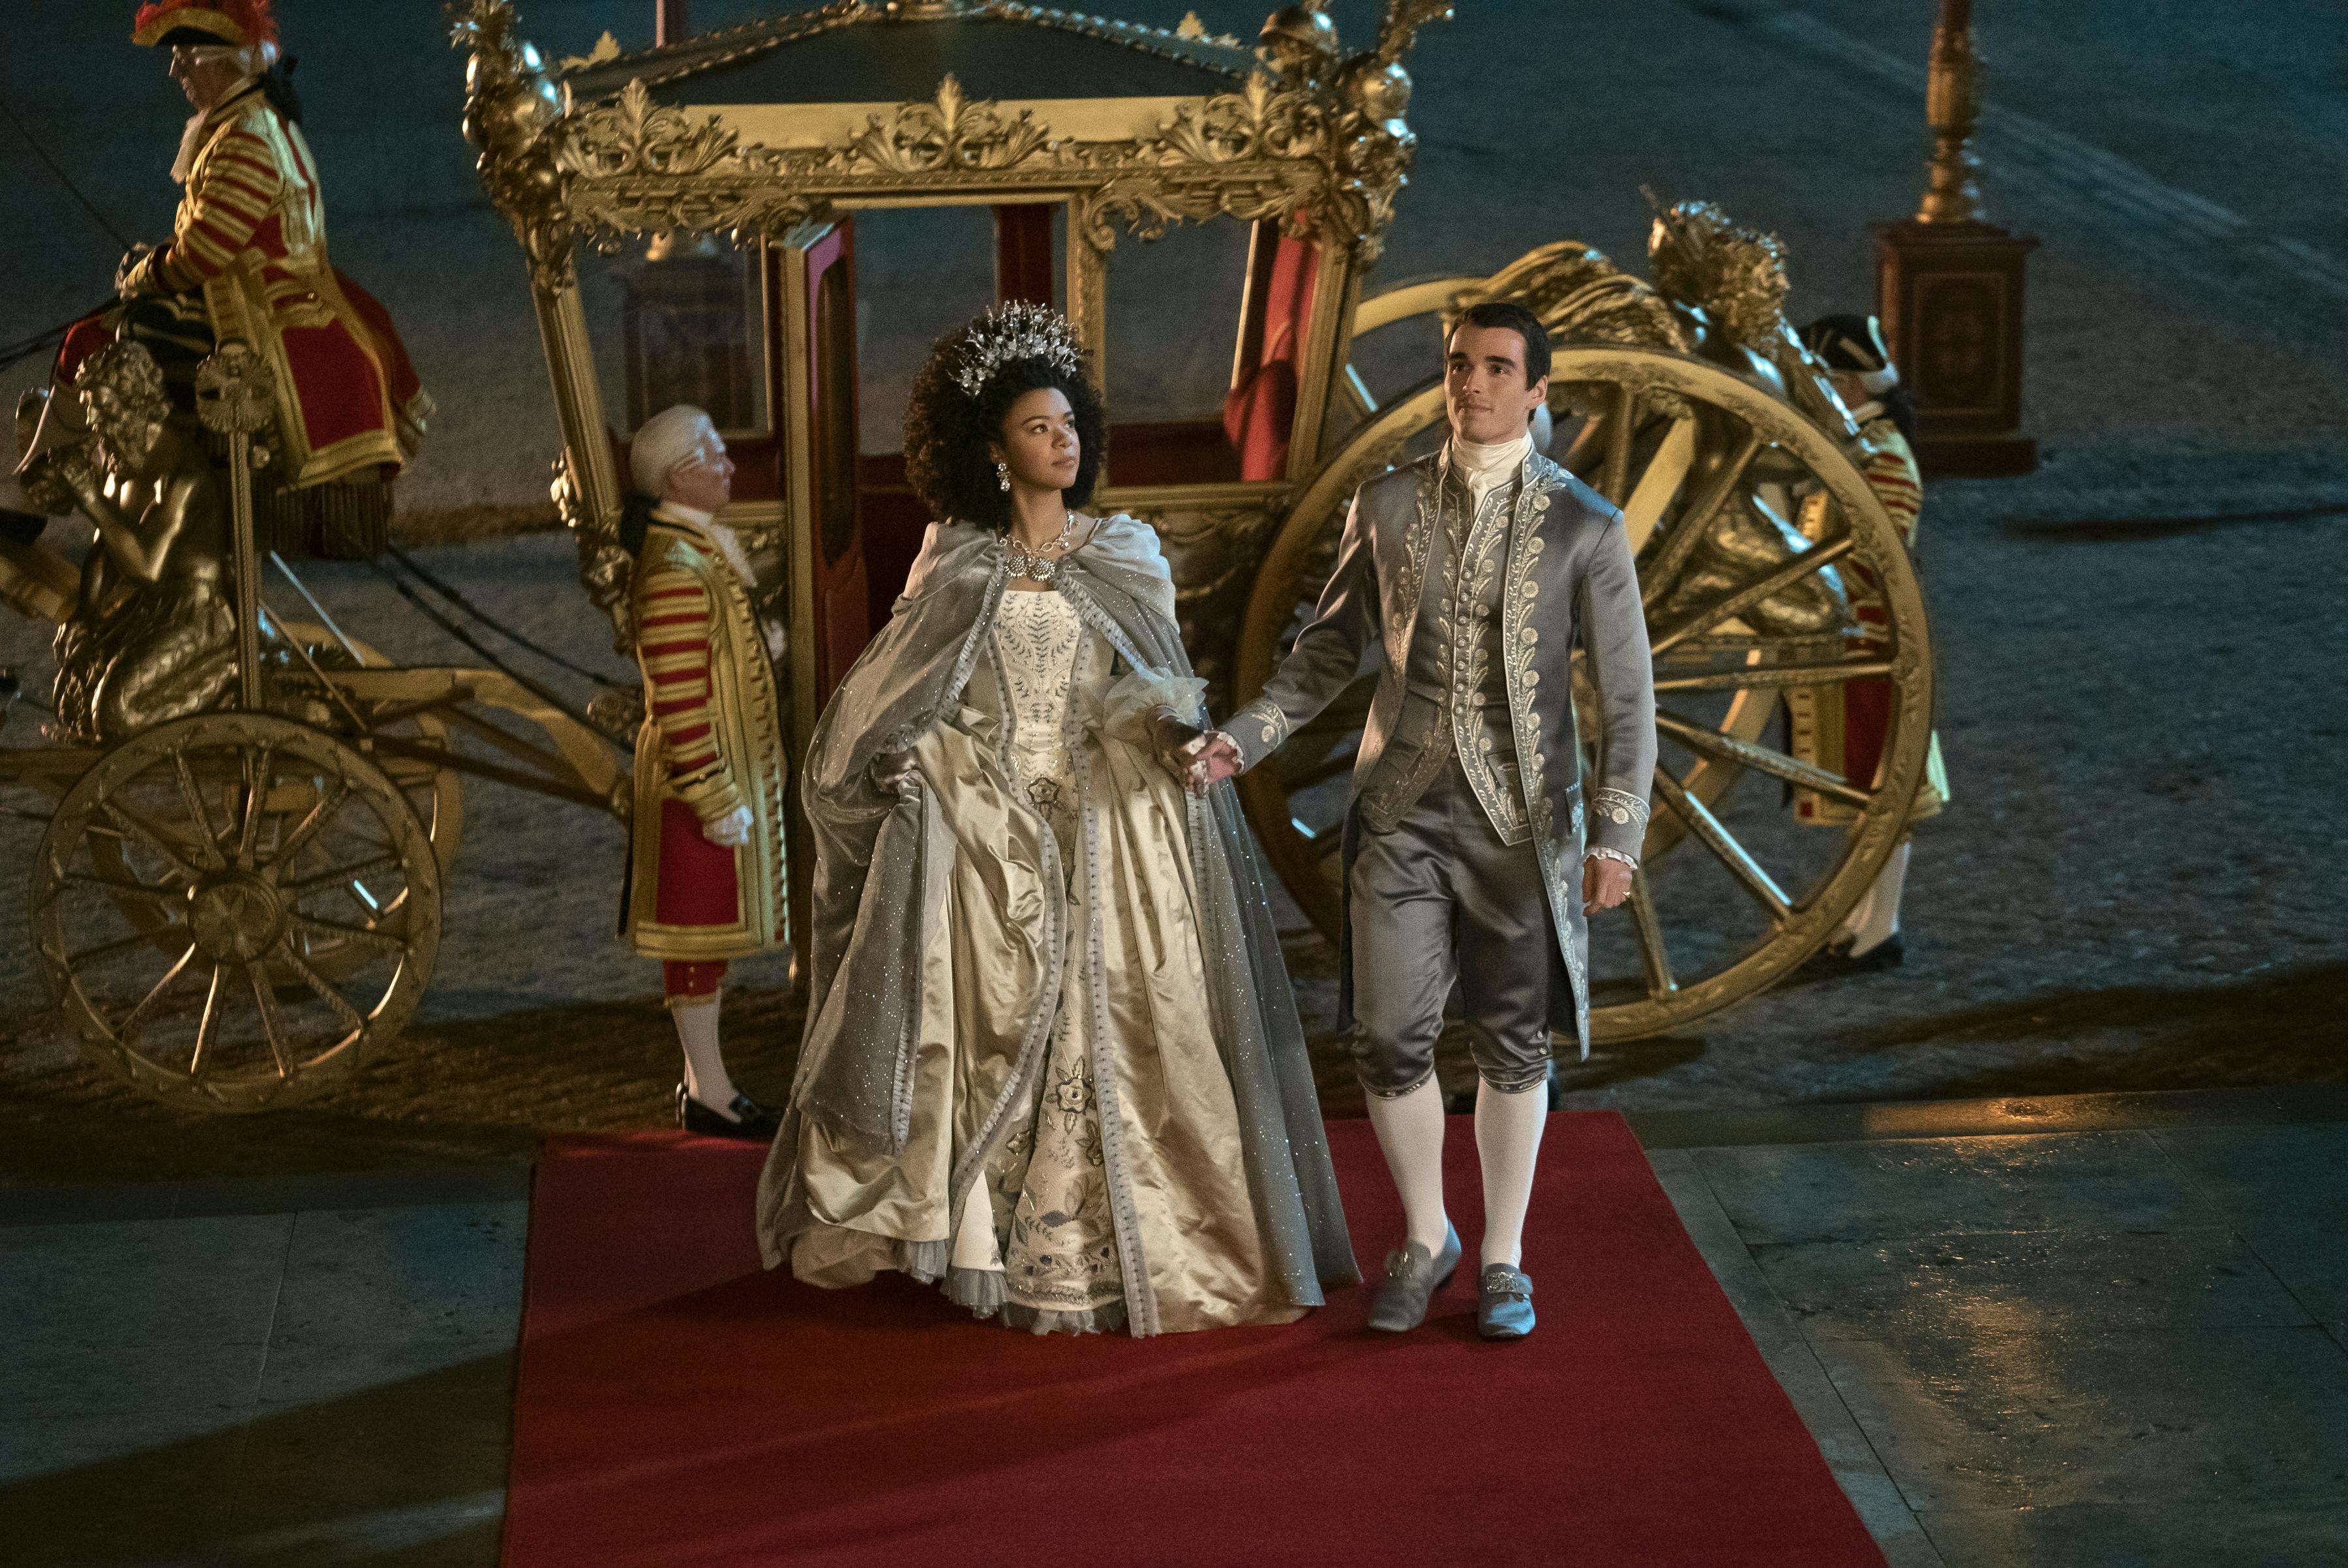 India Amarteifio som den unge dronning Charlotte og Corey Mylchreest som den unge kong George 3.